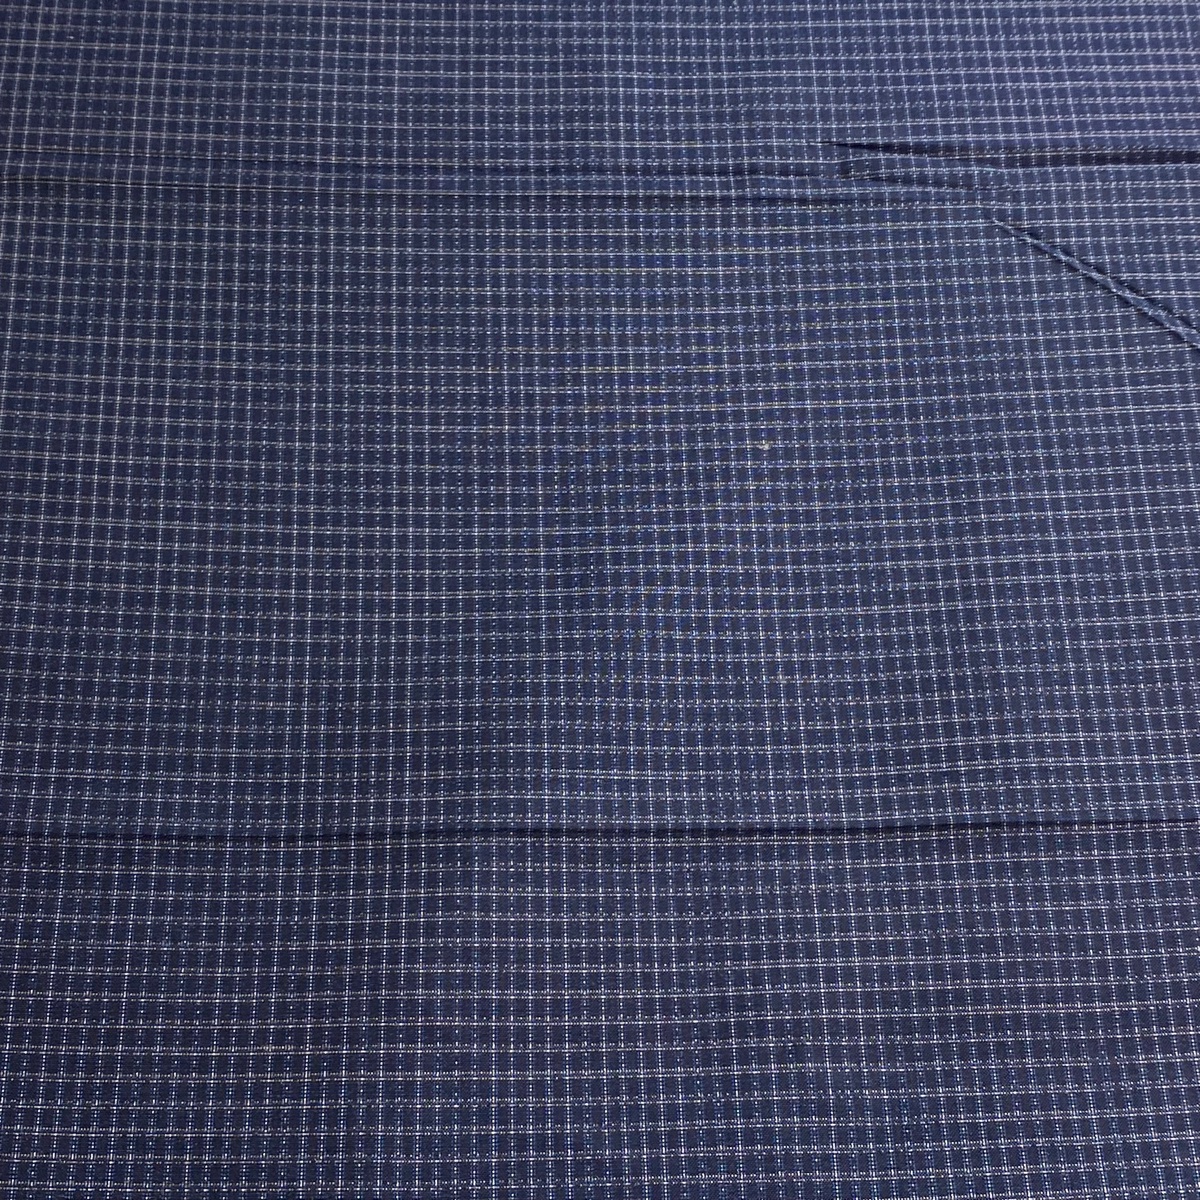  ткань превосходящий товар мужчина кимоно эпонж доказательство бумага .. темно-синий цвет натуральный шелк б/у 